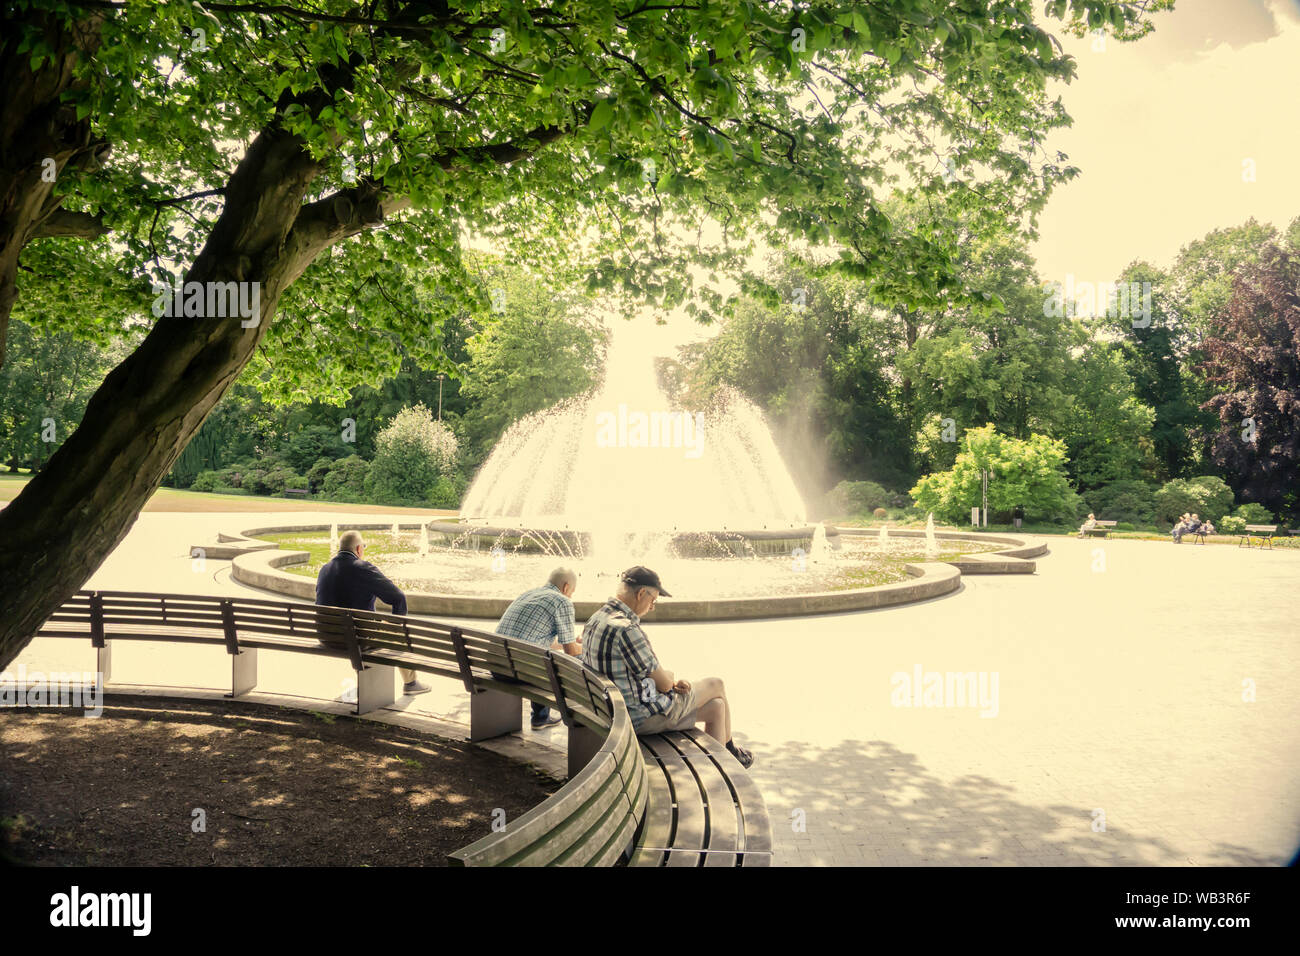 Bad Oeynhausen - Niedersachsen Allemagne - 2019 06 13 - Editorial Avis de pensionners sur un banc de parc à réfléchir sur leur vie en face d'une fontaine Banque D'Images